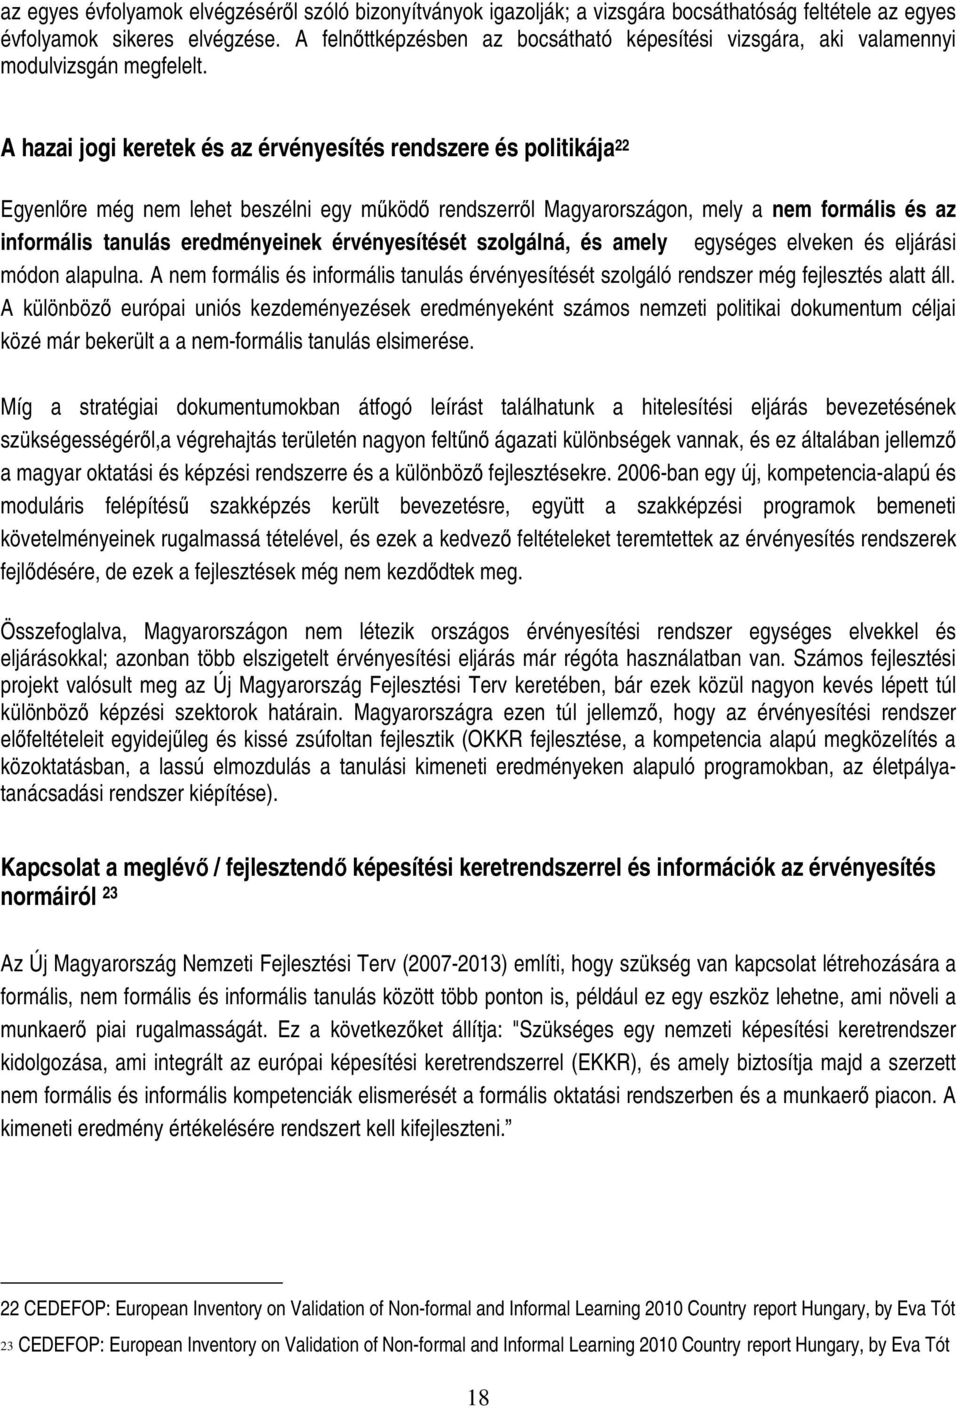 A hazai jogi keretek és az érvényesítés rendszere és politikája 22 Egyenlıre még nem lehet beszélni egy mőködı rendszerrıl Magyarországon, mely a nem formális és az informális tanulás eredményeinek